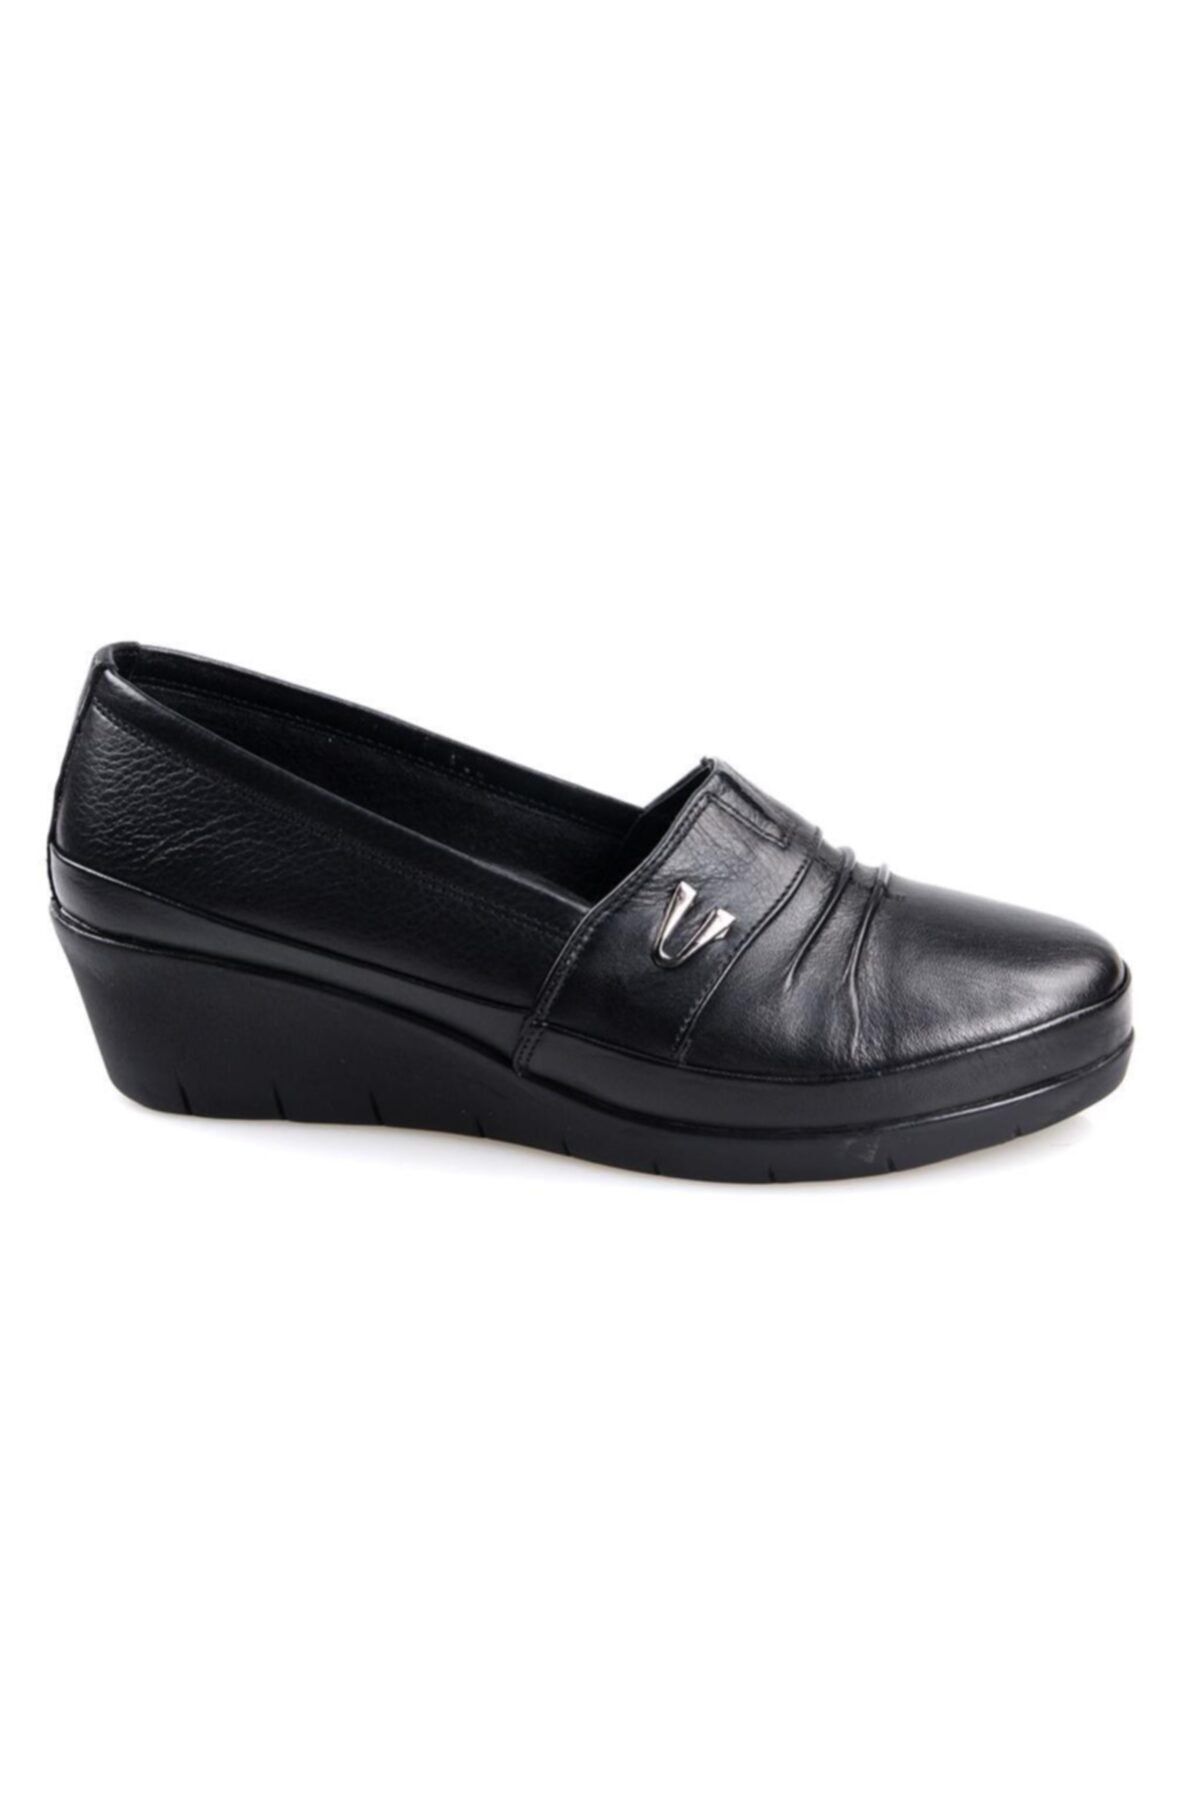 Scavia Kadın Ortapedik Comfort Siyah Deri  Günlük Ayakkabı